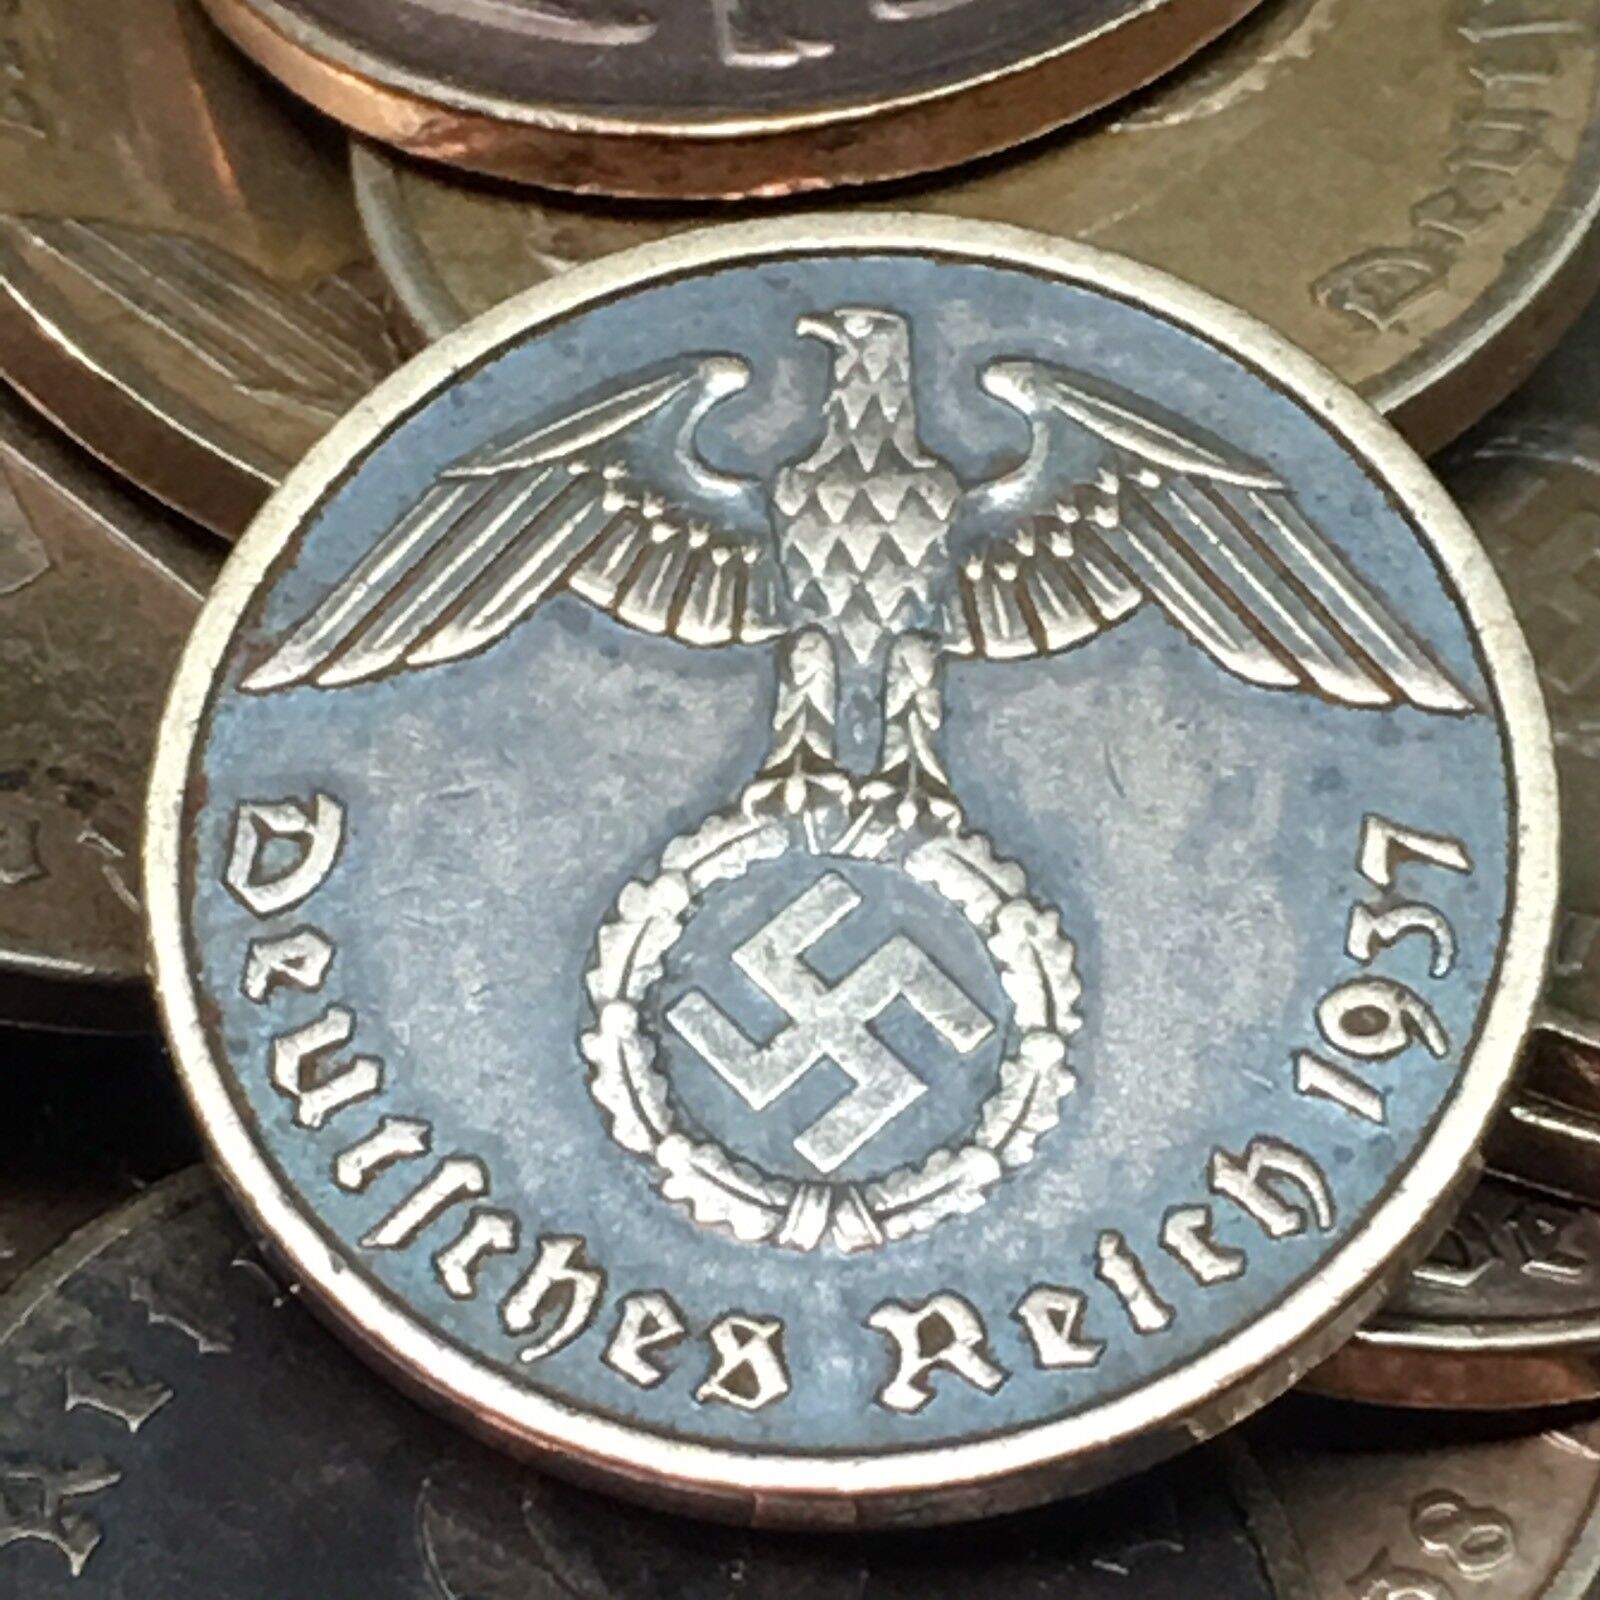 Rare WW2 German 2 RP Reichspfennig 3rd Reich Bronze Nazi Coin Buy 3 Get 1 Free Без бренда